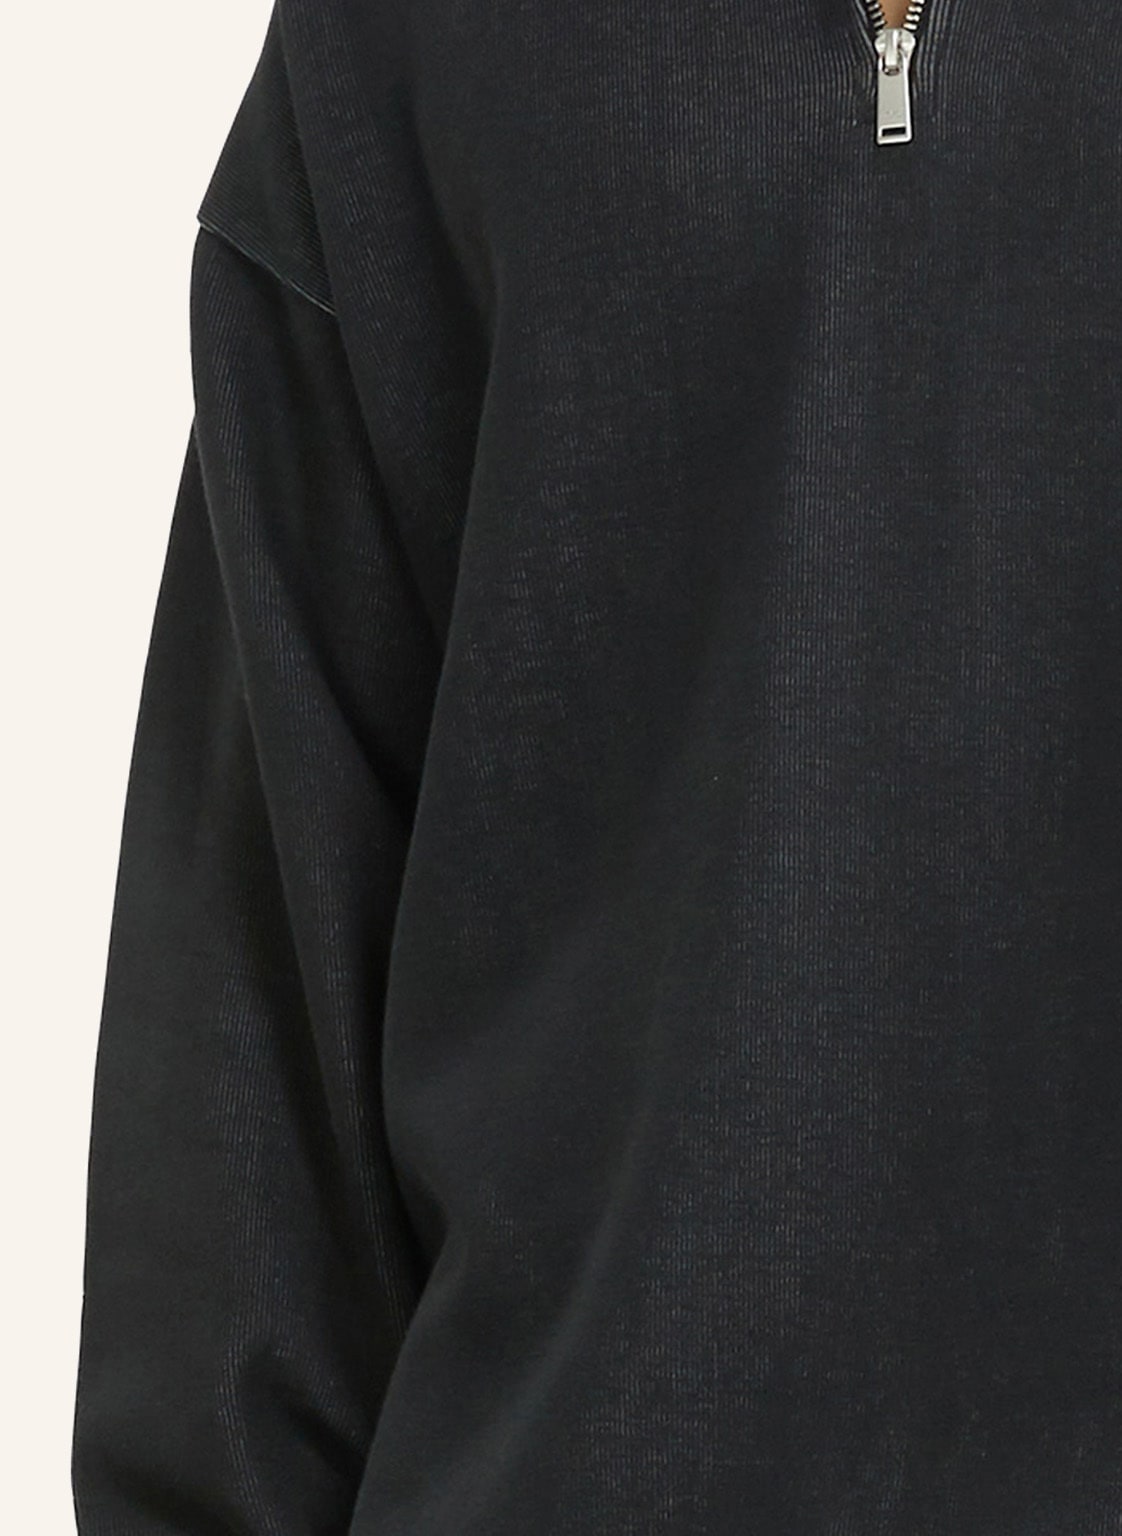 YOUNG POETS SOCIETY Half-Zip Pullover CIEL HALF ZIP 221 Regular Fit in schwarz online kaufen